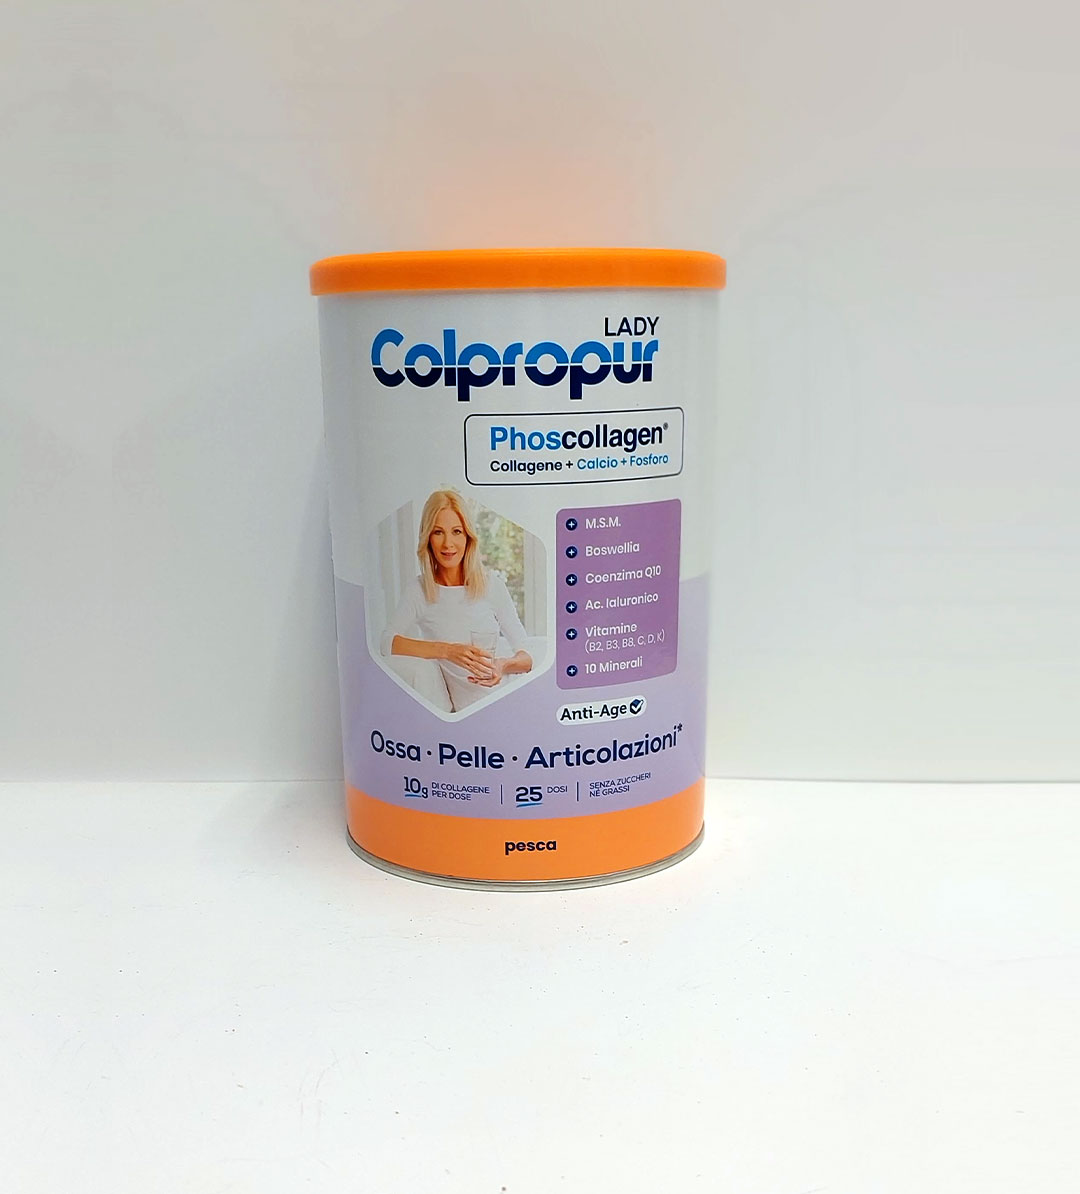 Colpropur - Phoscollagen per Ossa, Pelle e Articolazioni